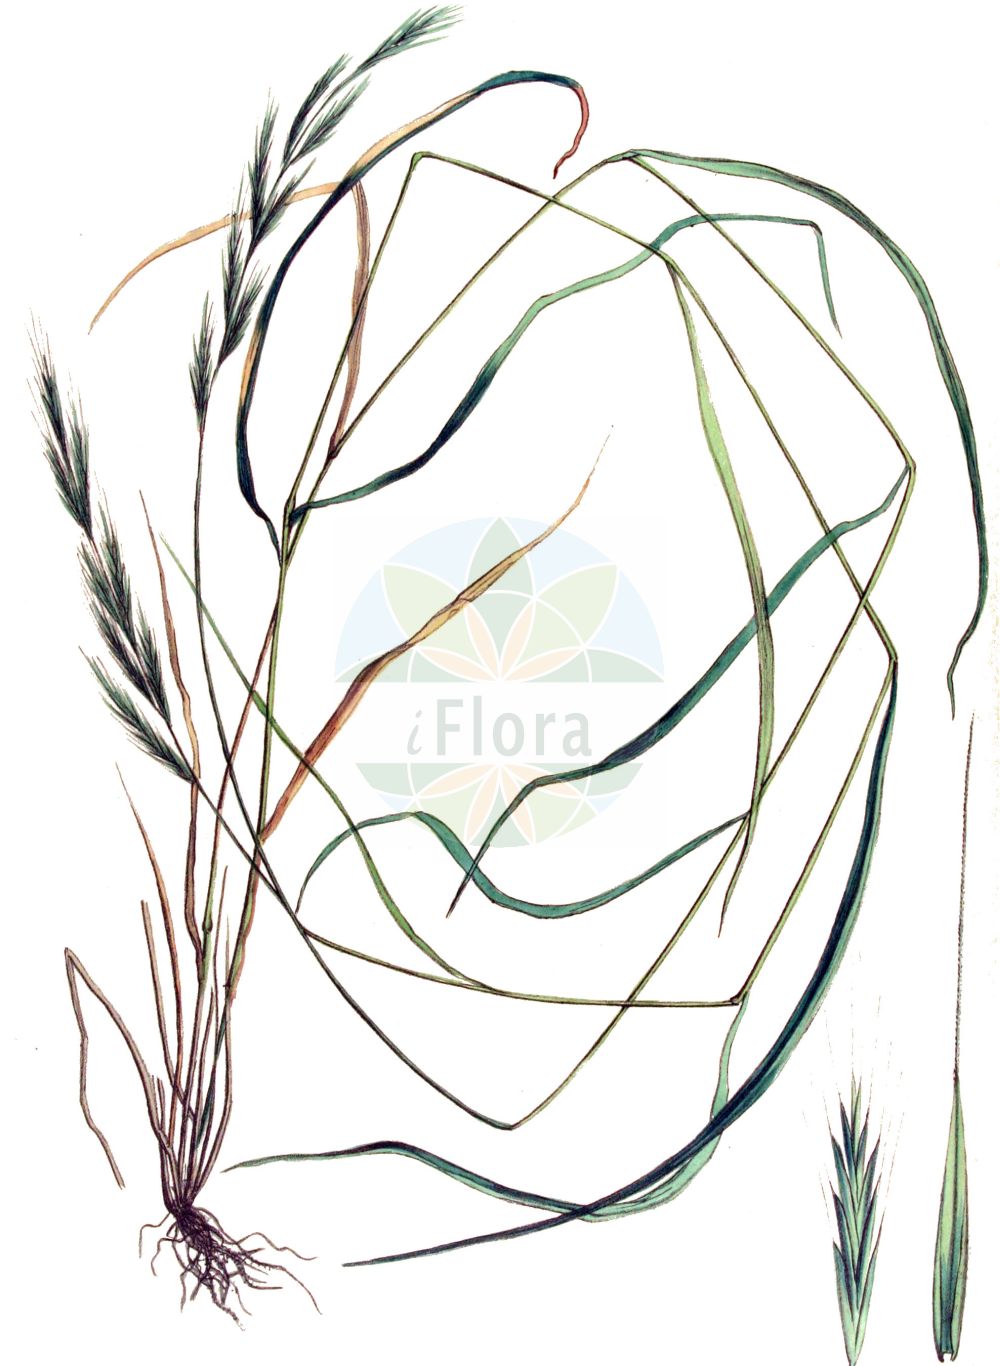 Historische Abbildung von Brachypodium sylvaticum (Wald-Fiederzwenke - False Brome). Das Bild zeigt Blatt, Bluete, Frucht und Same. ---- Historical Drawing of Brachypodium sylvaticum (Wald-Fiederzwenke - False Brome). The image is showing leaf, flower, fruit and seed.(Brachypodium sylvaticum,Wald-Fiederzwenke,False Brome,Brachypodium pubescens,Brachypodium sylvaticum,Brevipodium sylvaticum,Wald-Fiederzwenke,False Brome,Perennial False Brome,False Broom,Slender False Brome,Slender Wood False Brome,Wood False Brome,Brachypodium,Zwenke,False Brome,Poaceae,Süßgräser,Grass family,Blatt,Bluete,Frucht,Same,leaf,flower,fruit,seed,Kops (1800-1934))